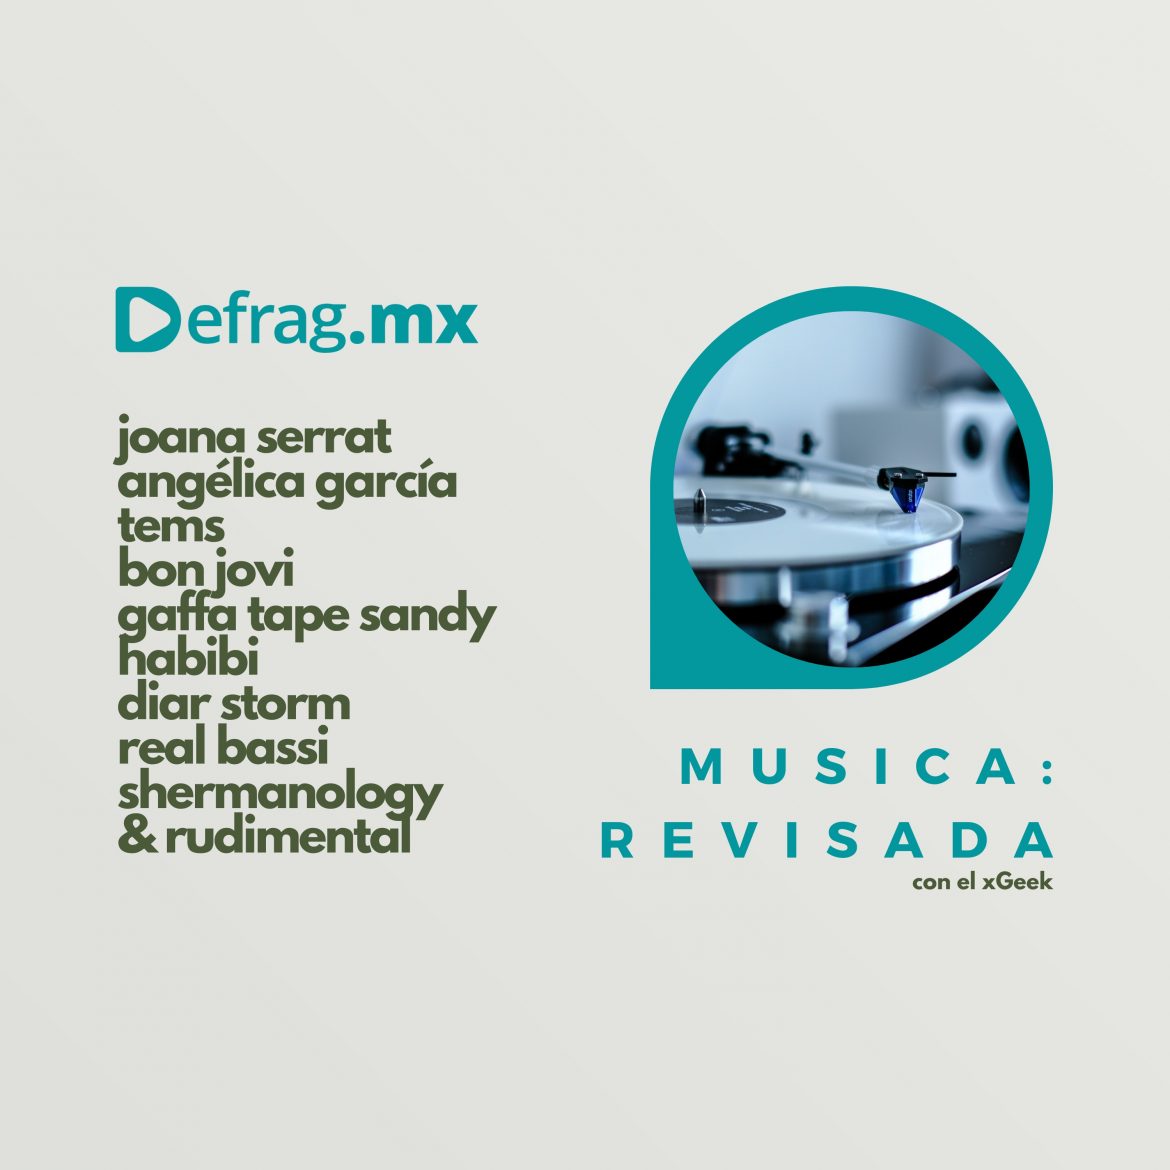 Defrag.mx Podcast Música Revisada・Joana Serrat・Angélica García・Bon Jovi・Diar Storm